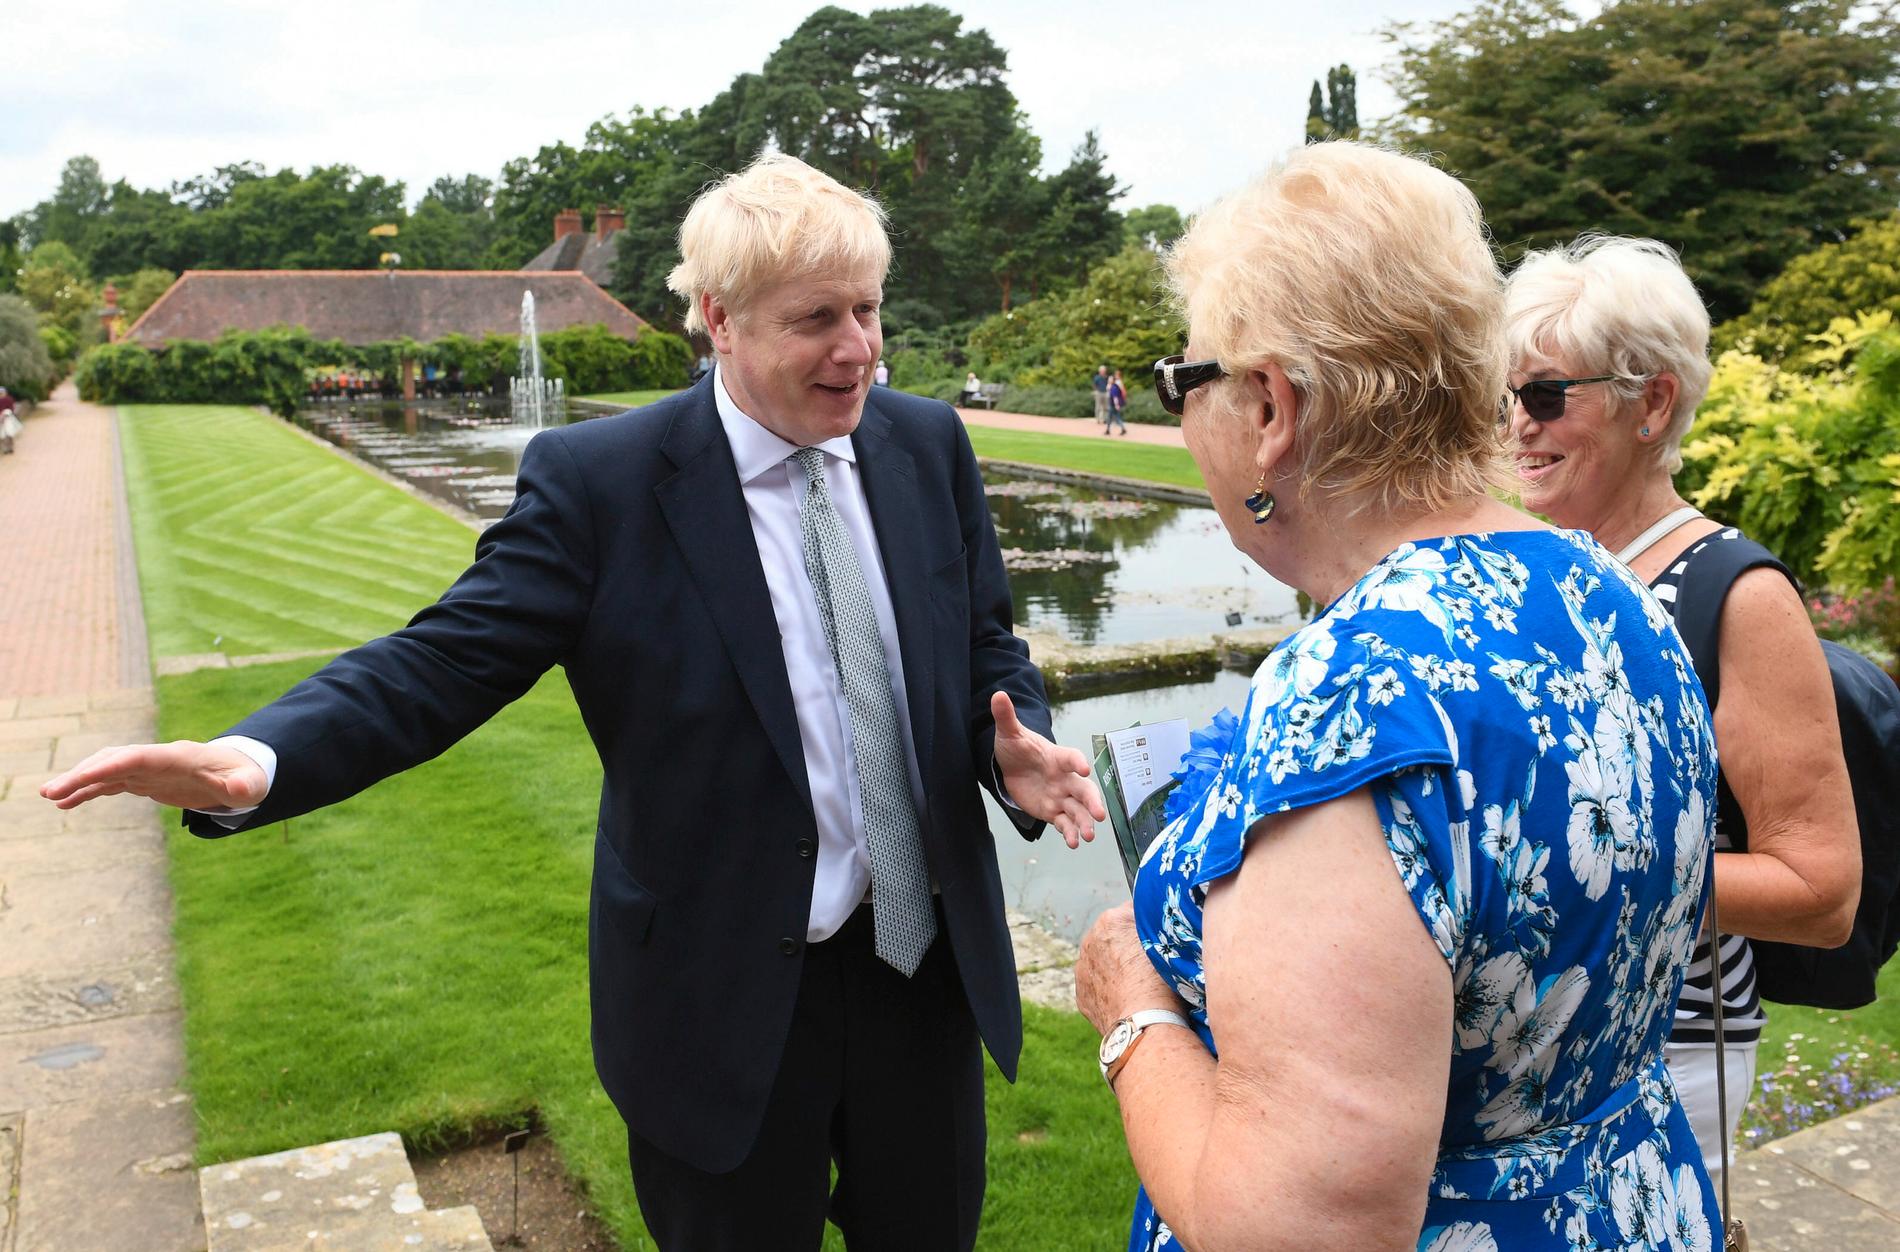 Boris Johnson, favorit till att bli ny Toryledare, pratar med besökare Royal Horticultural Society på tisdagen i Wisley.